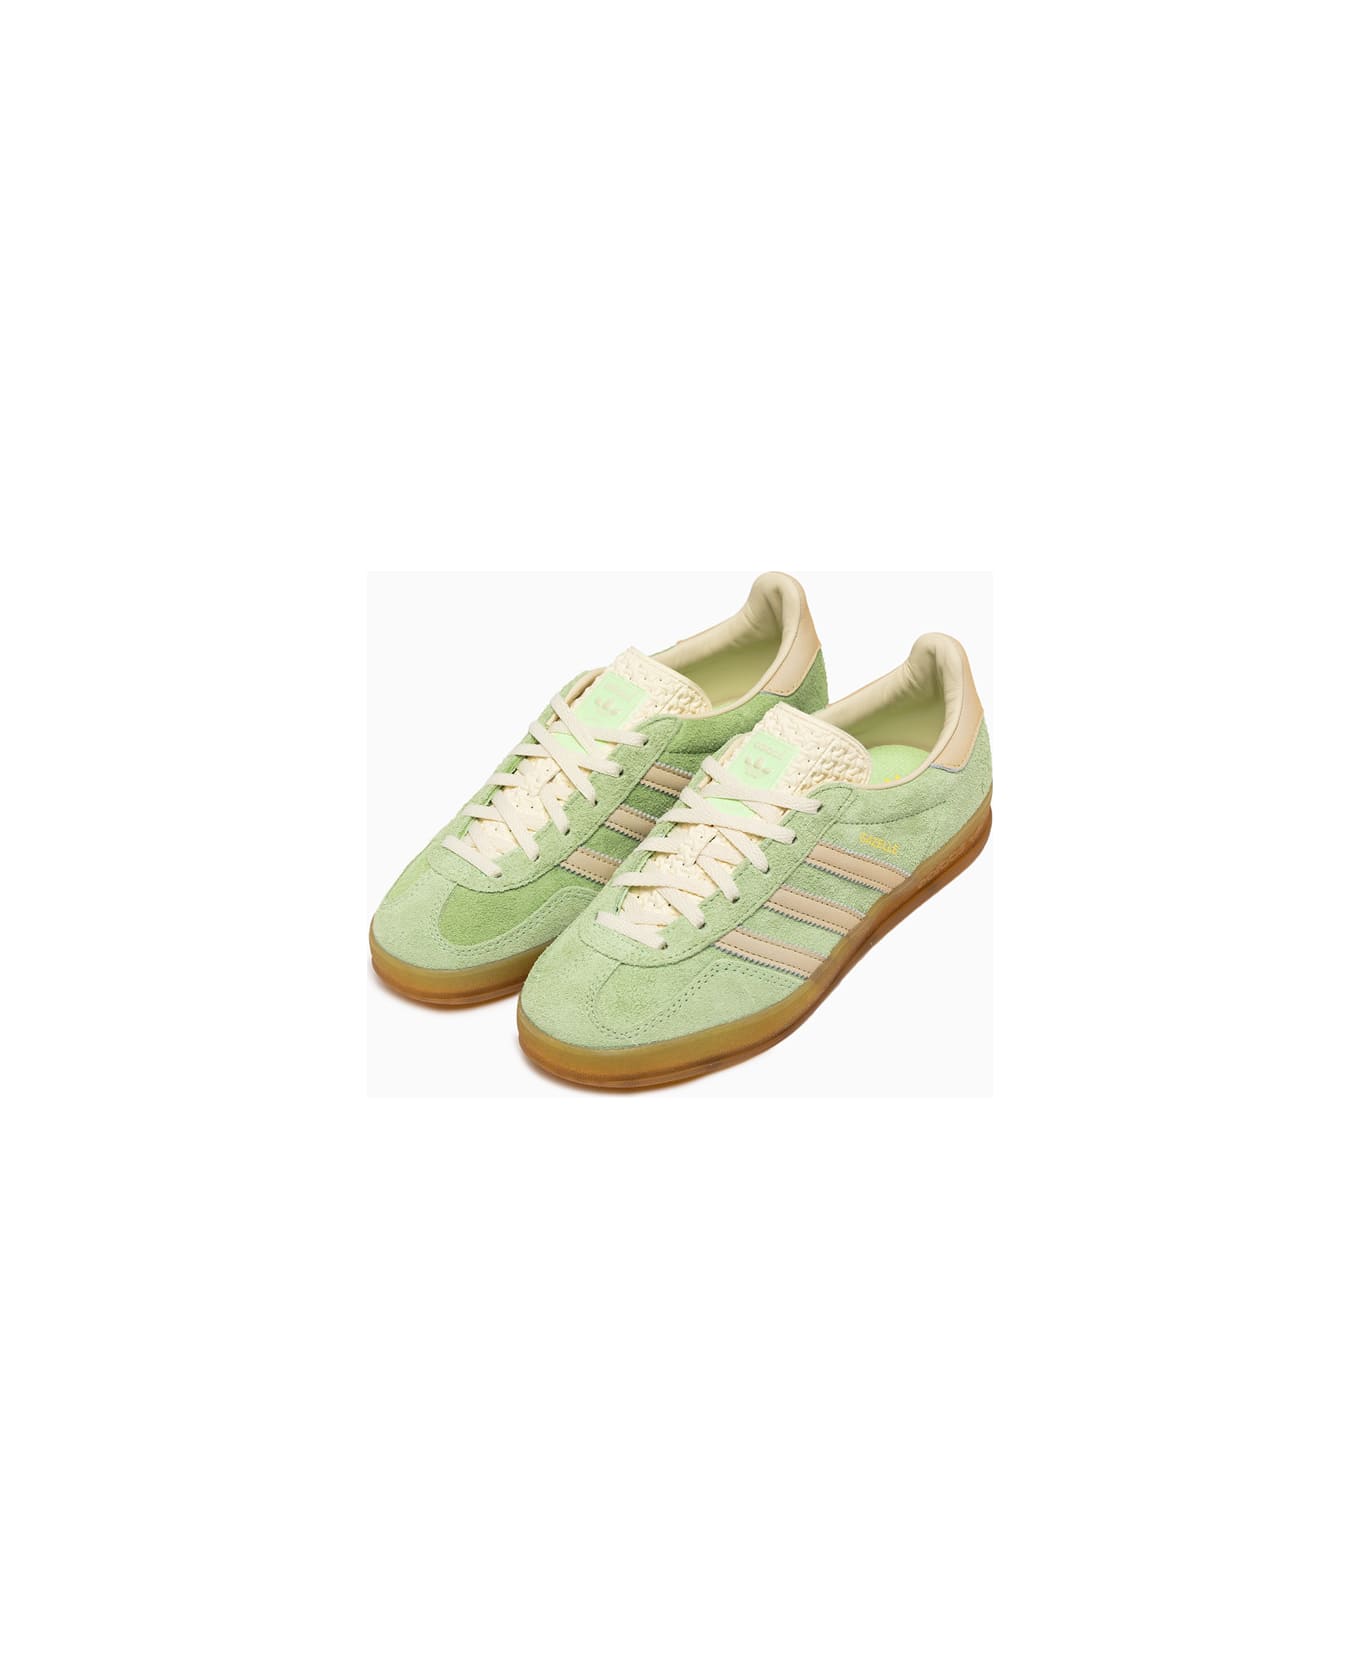 Adidas Originals Gazelle Indoor W Sneakers Ie2948 - Green